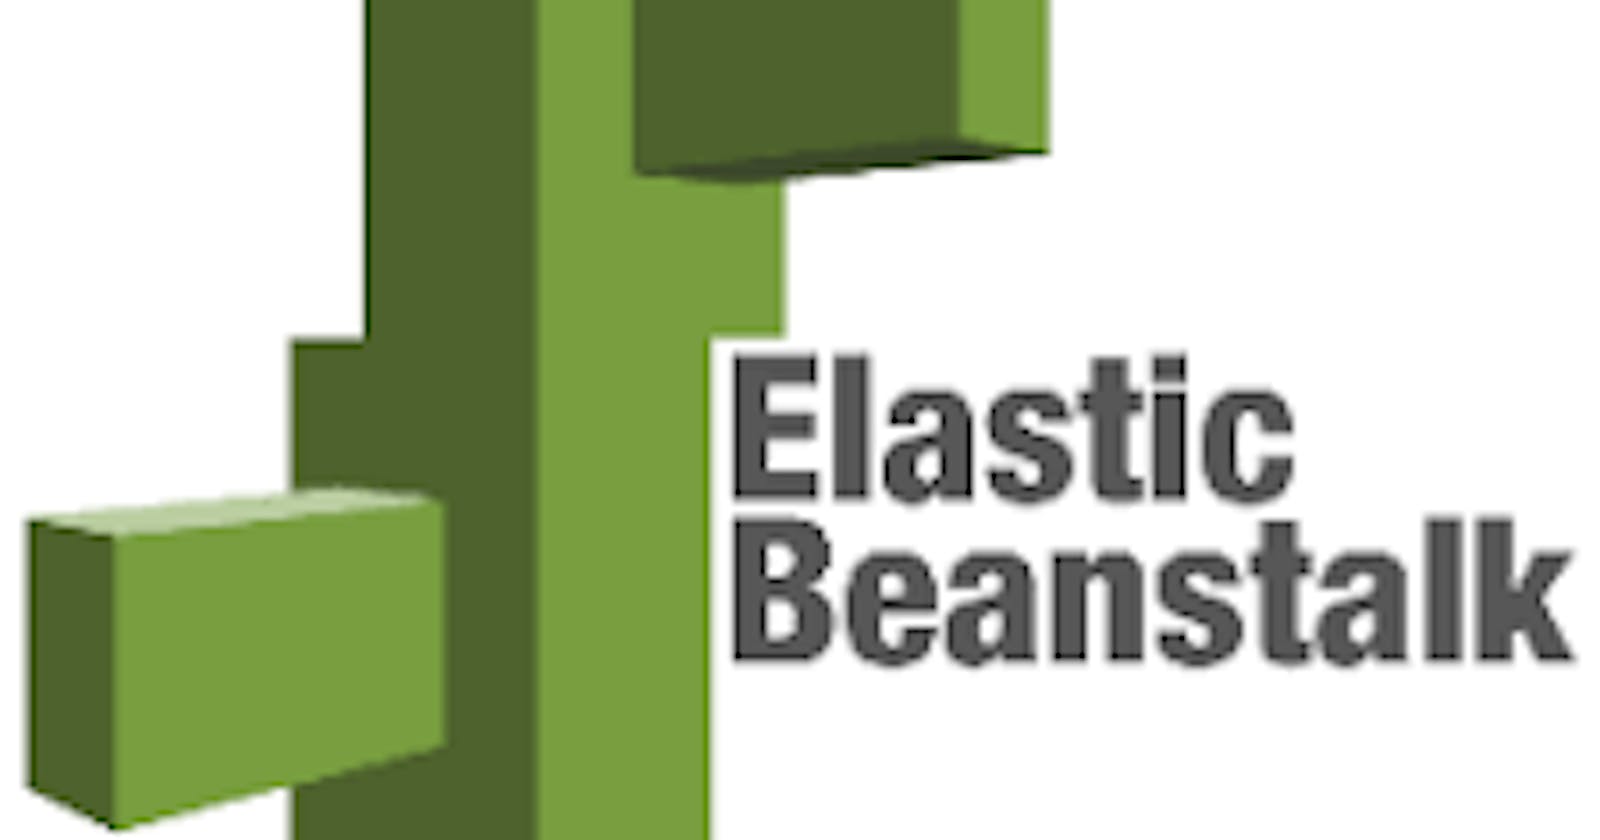 How to Deploy a Nodejs Express APP on AWS Elastic Beanstalk